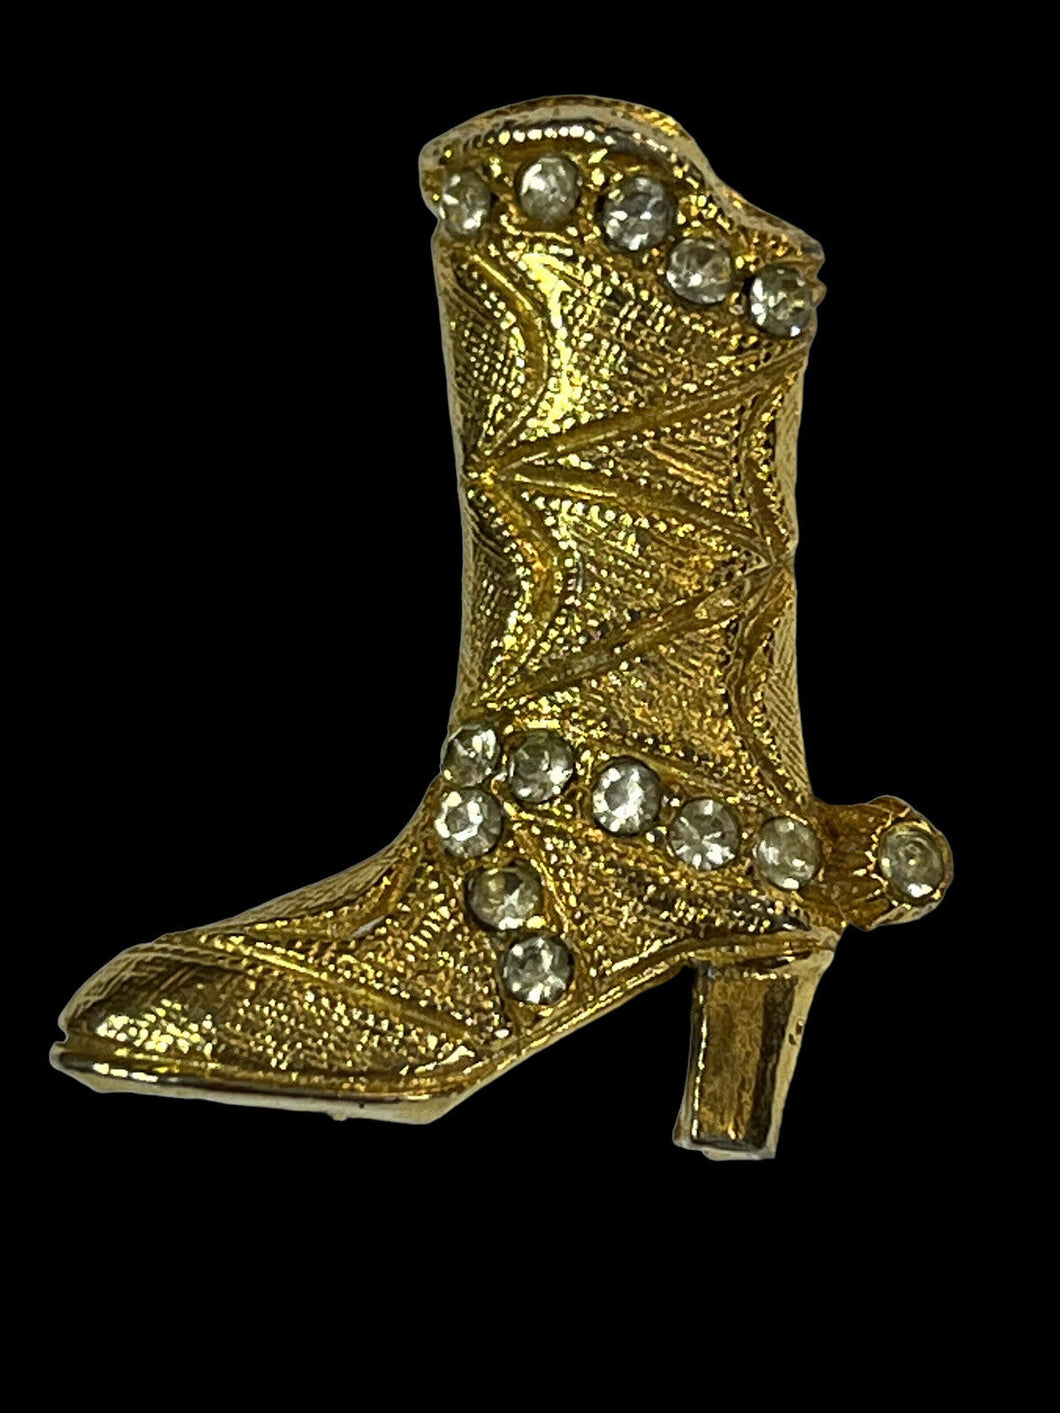 Vintage Gold Tone Diamanté Cowboy Boot Brooch